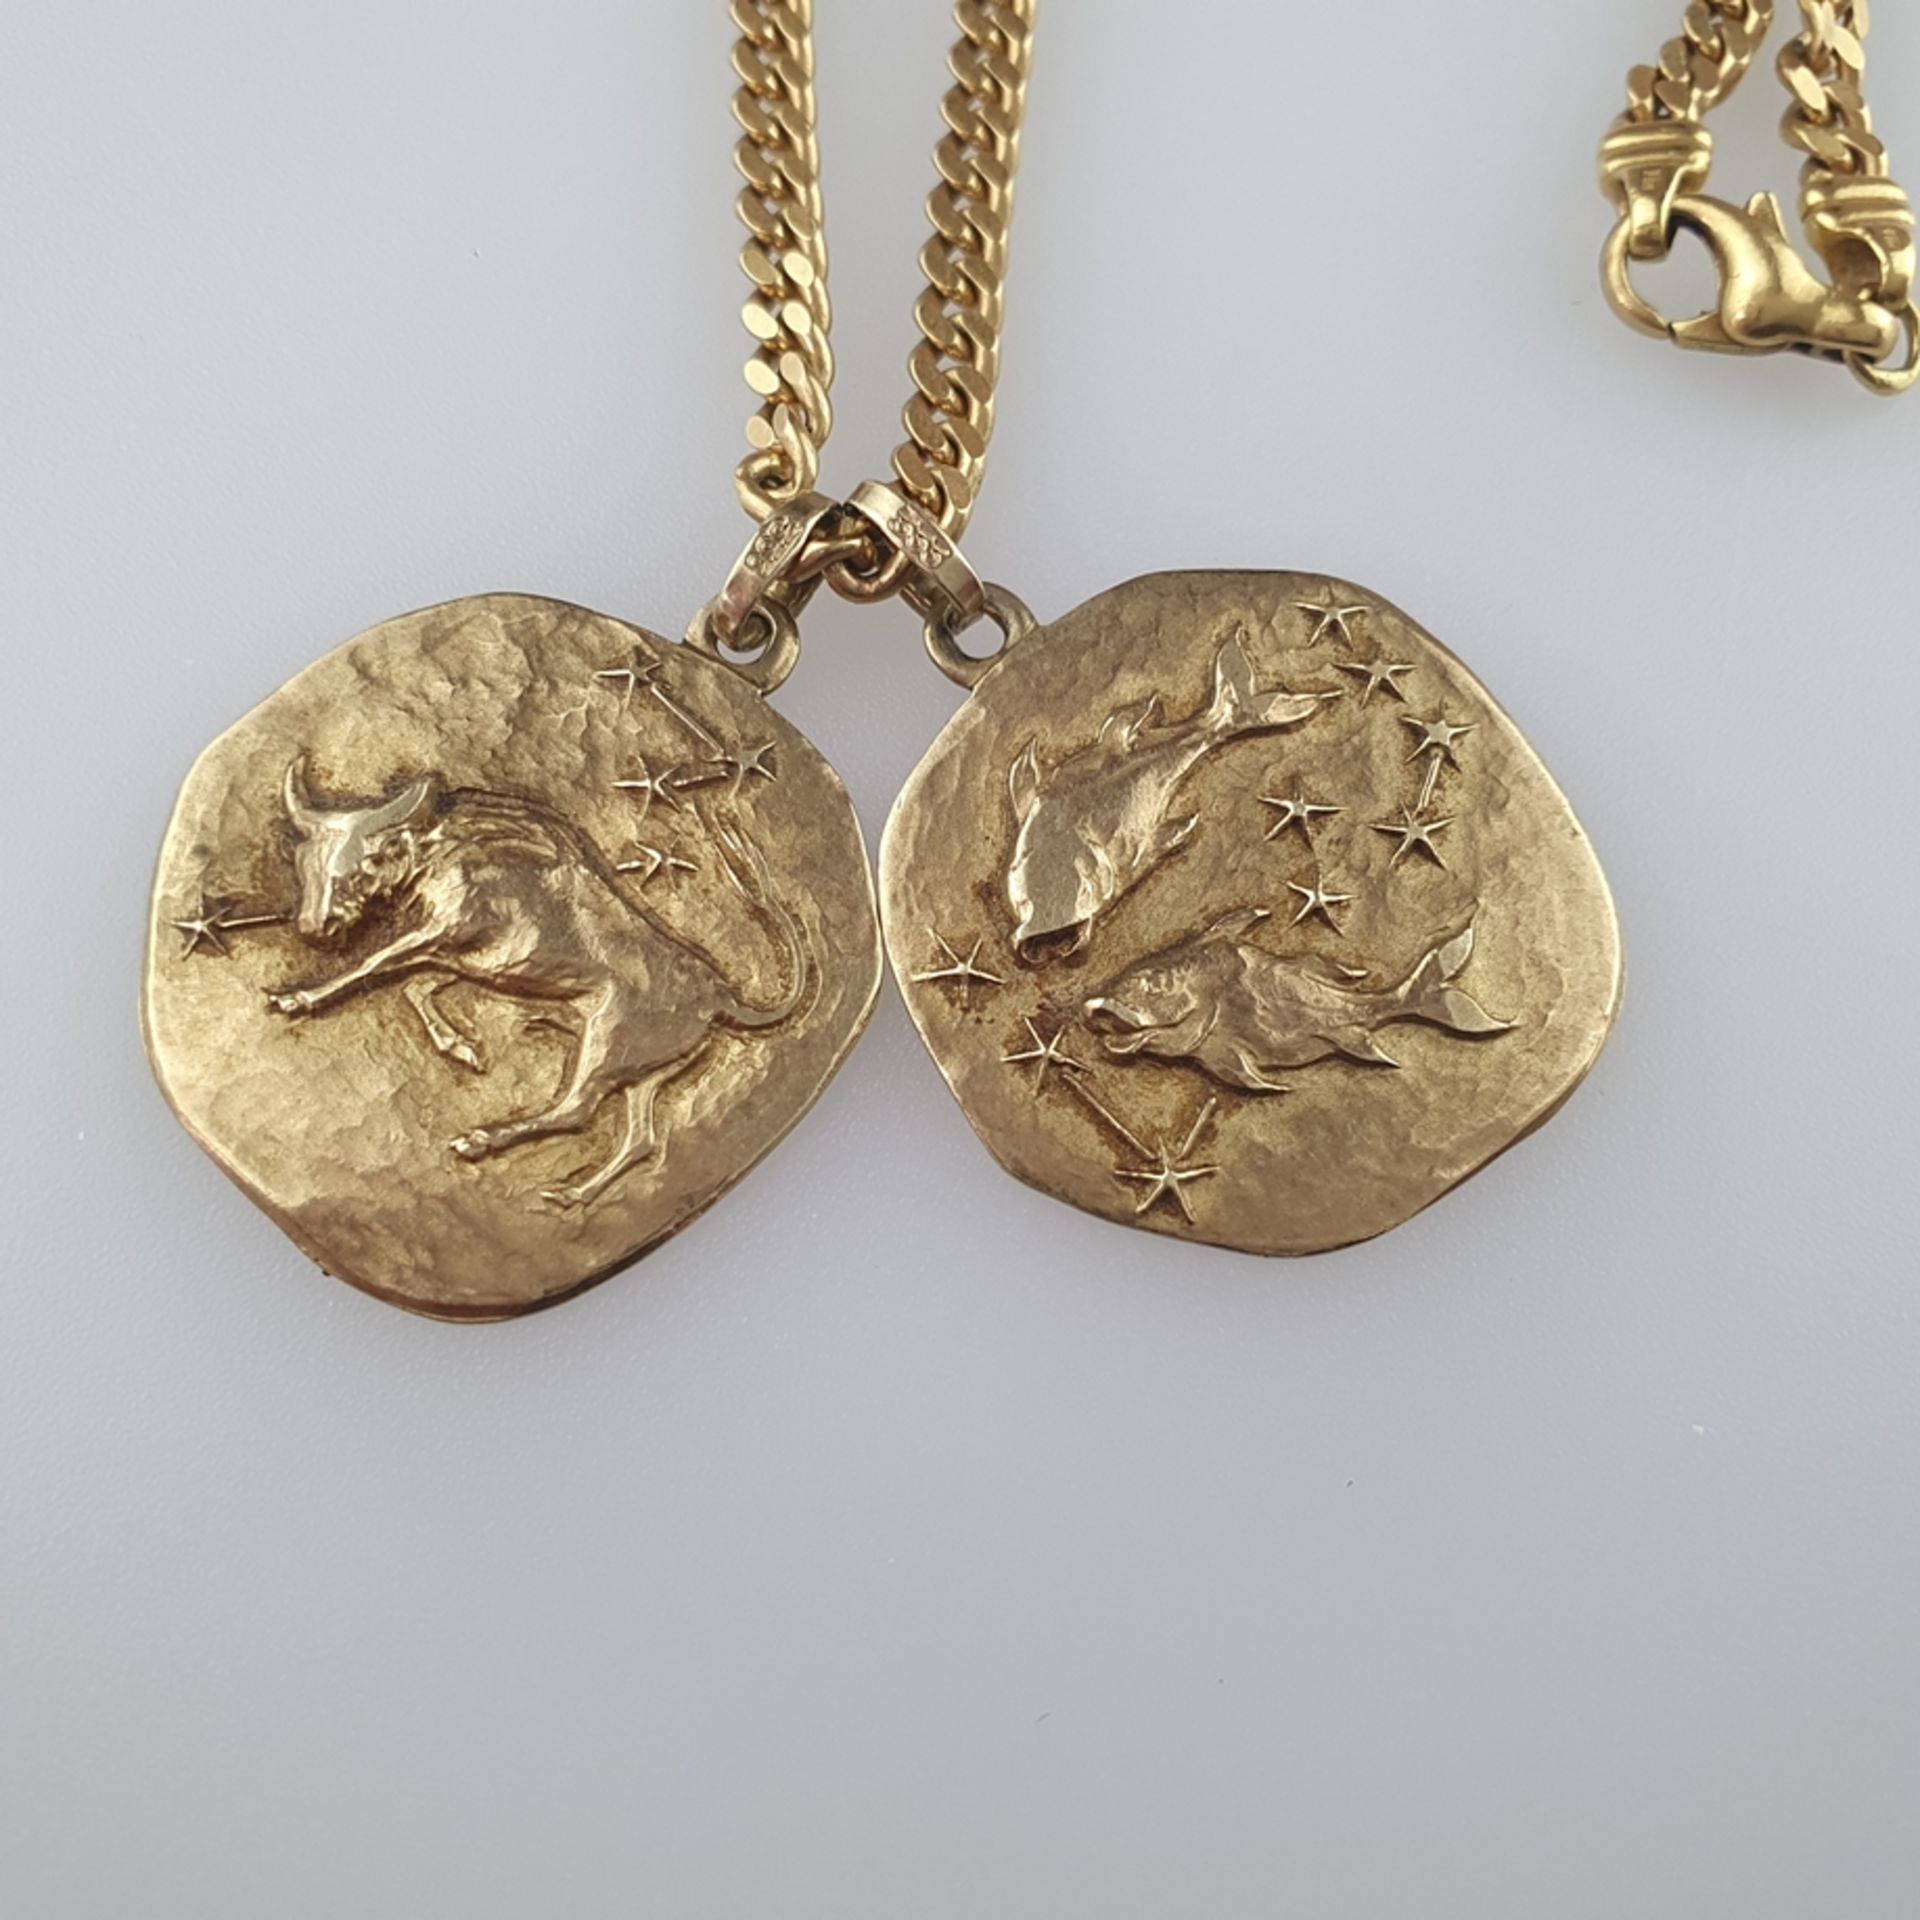 Goldkette mit zwei Sternzeichenanhängern - Gelbgold 750/000, Kette ca. 61cm lang, ca. 26,5 g/ zwei - Image 2 of 4